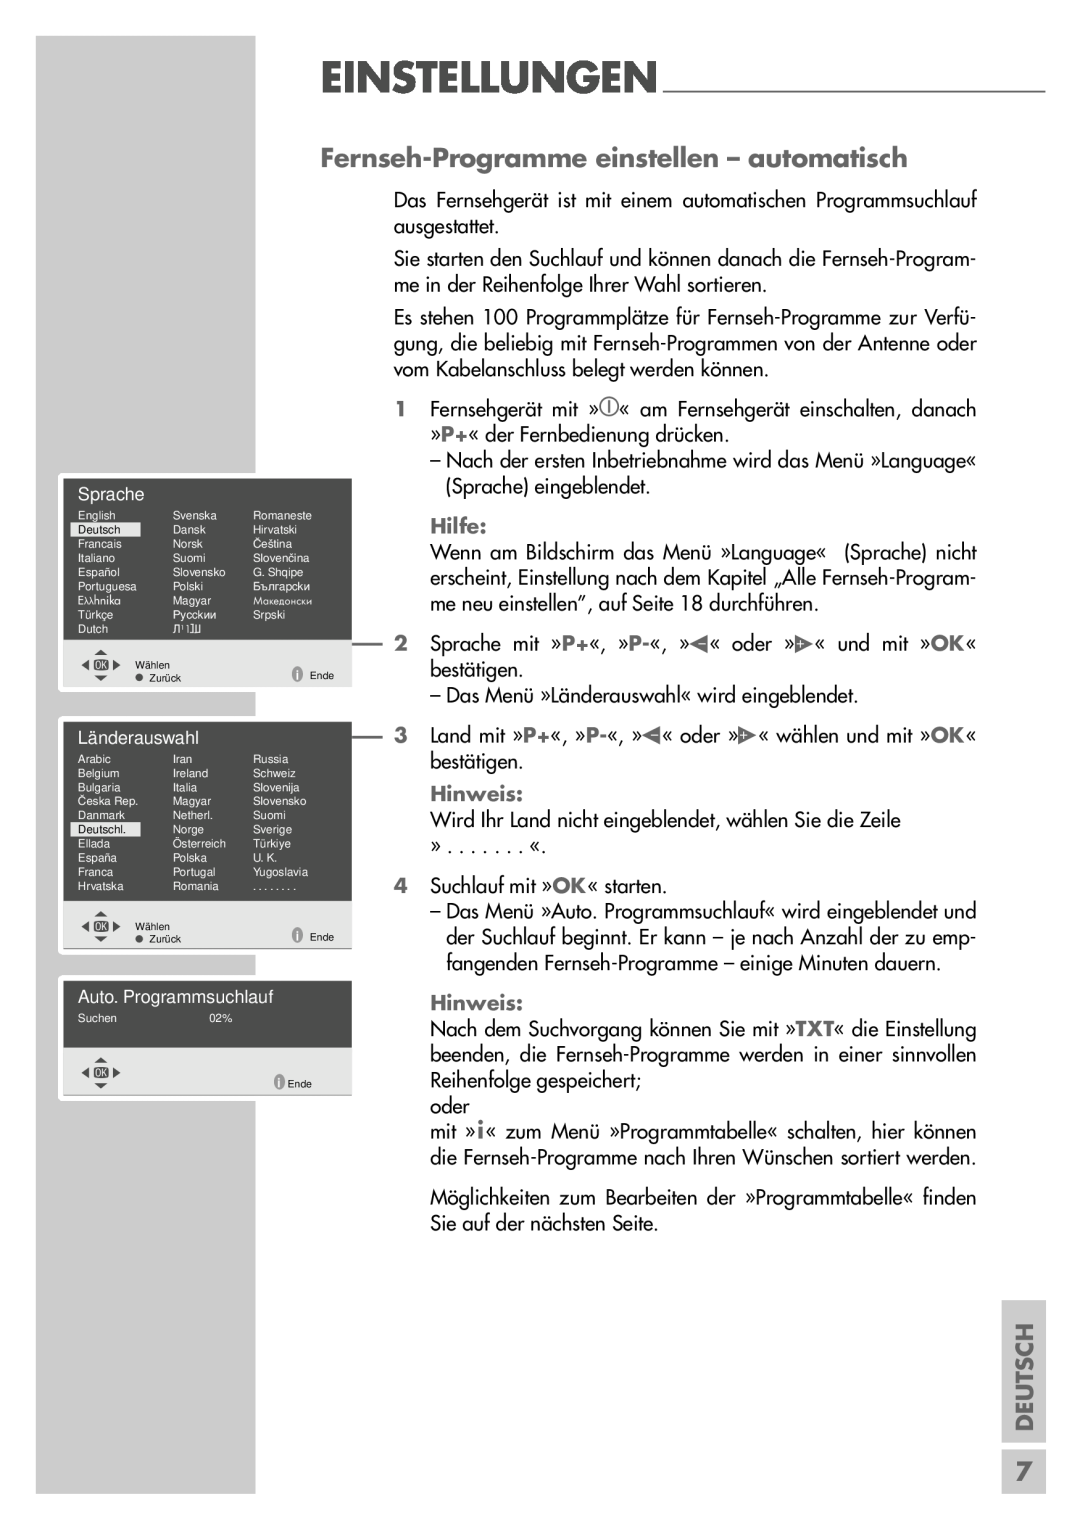 Grundig P37-4501 manual Fernseh-Programme einstellen - automatisch, Einstellungen, Hilfe, Deutsch, Hinweis 